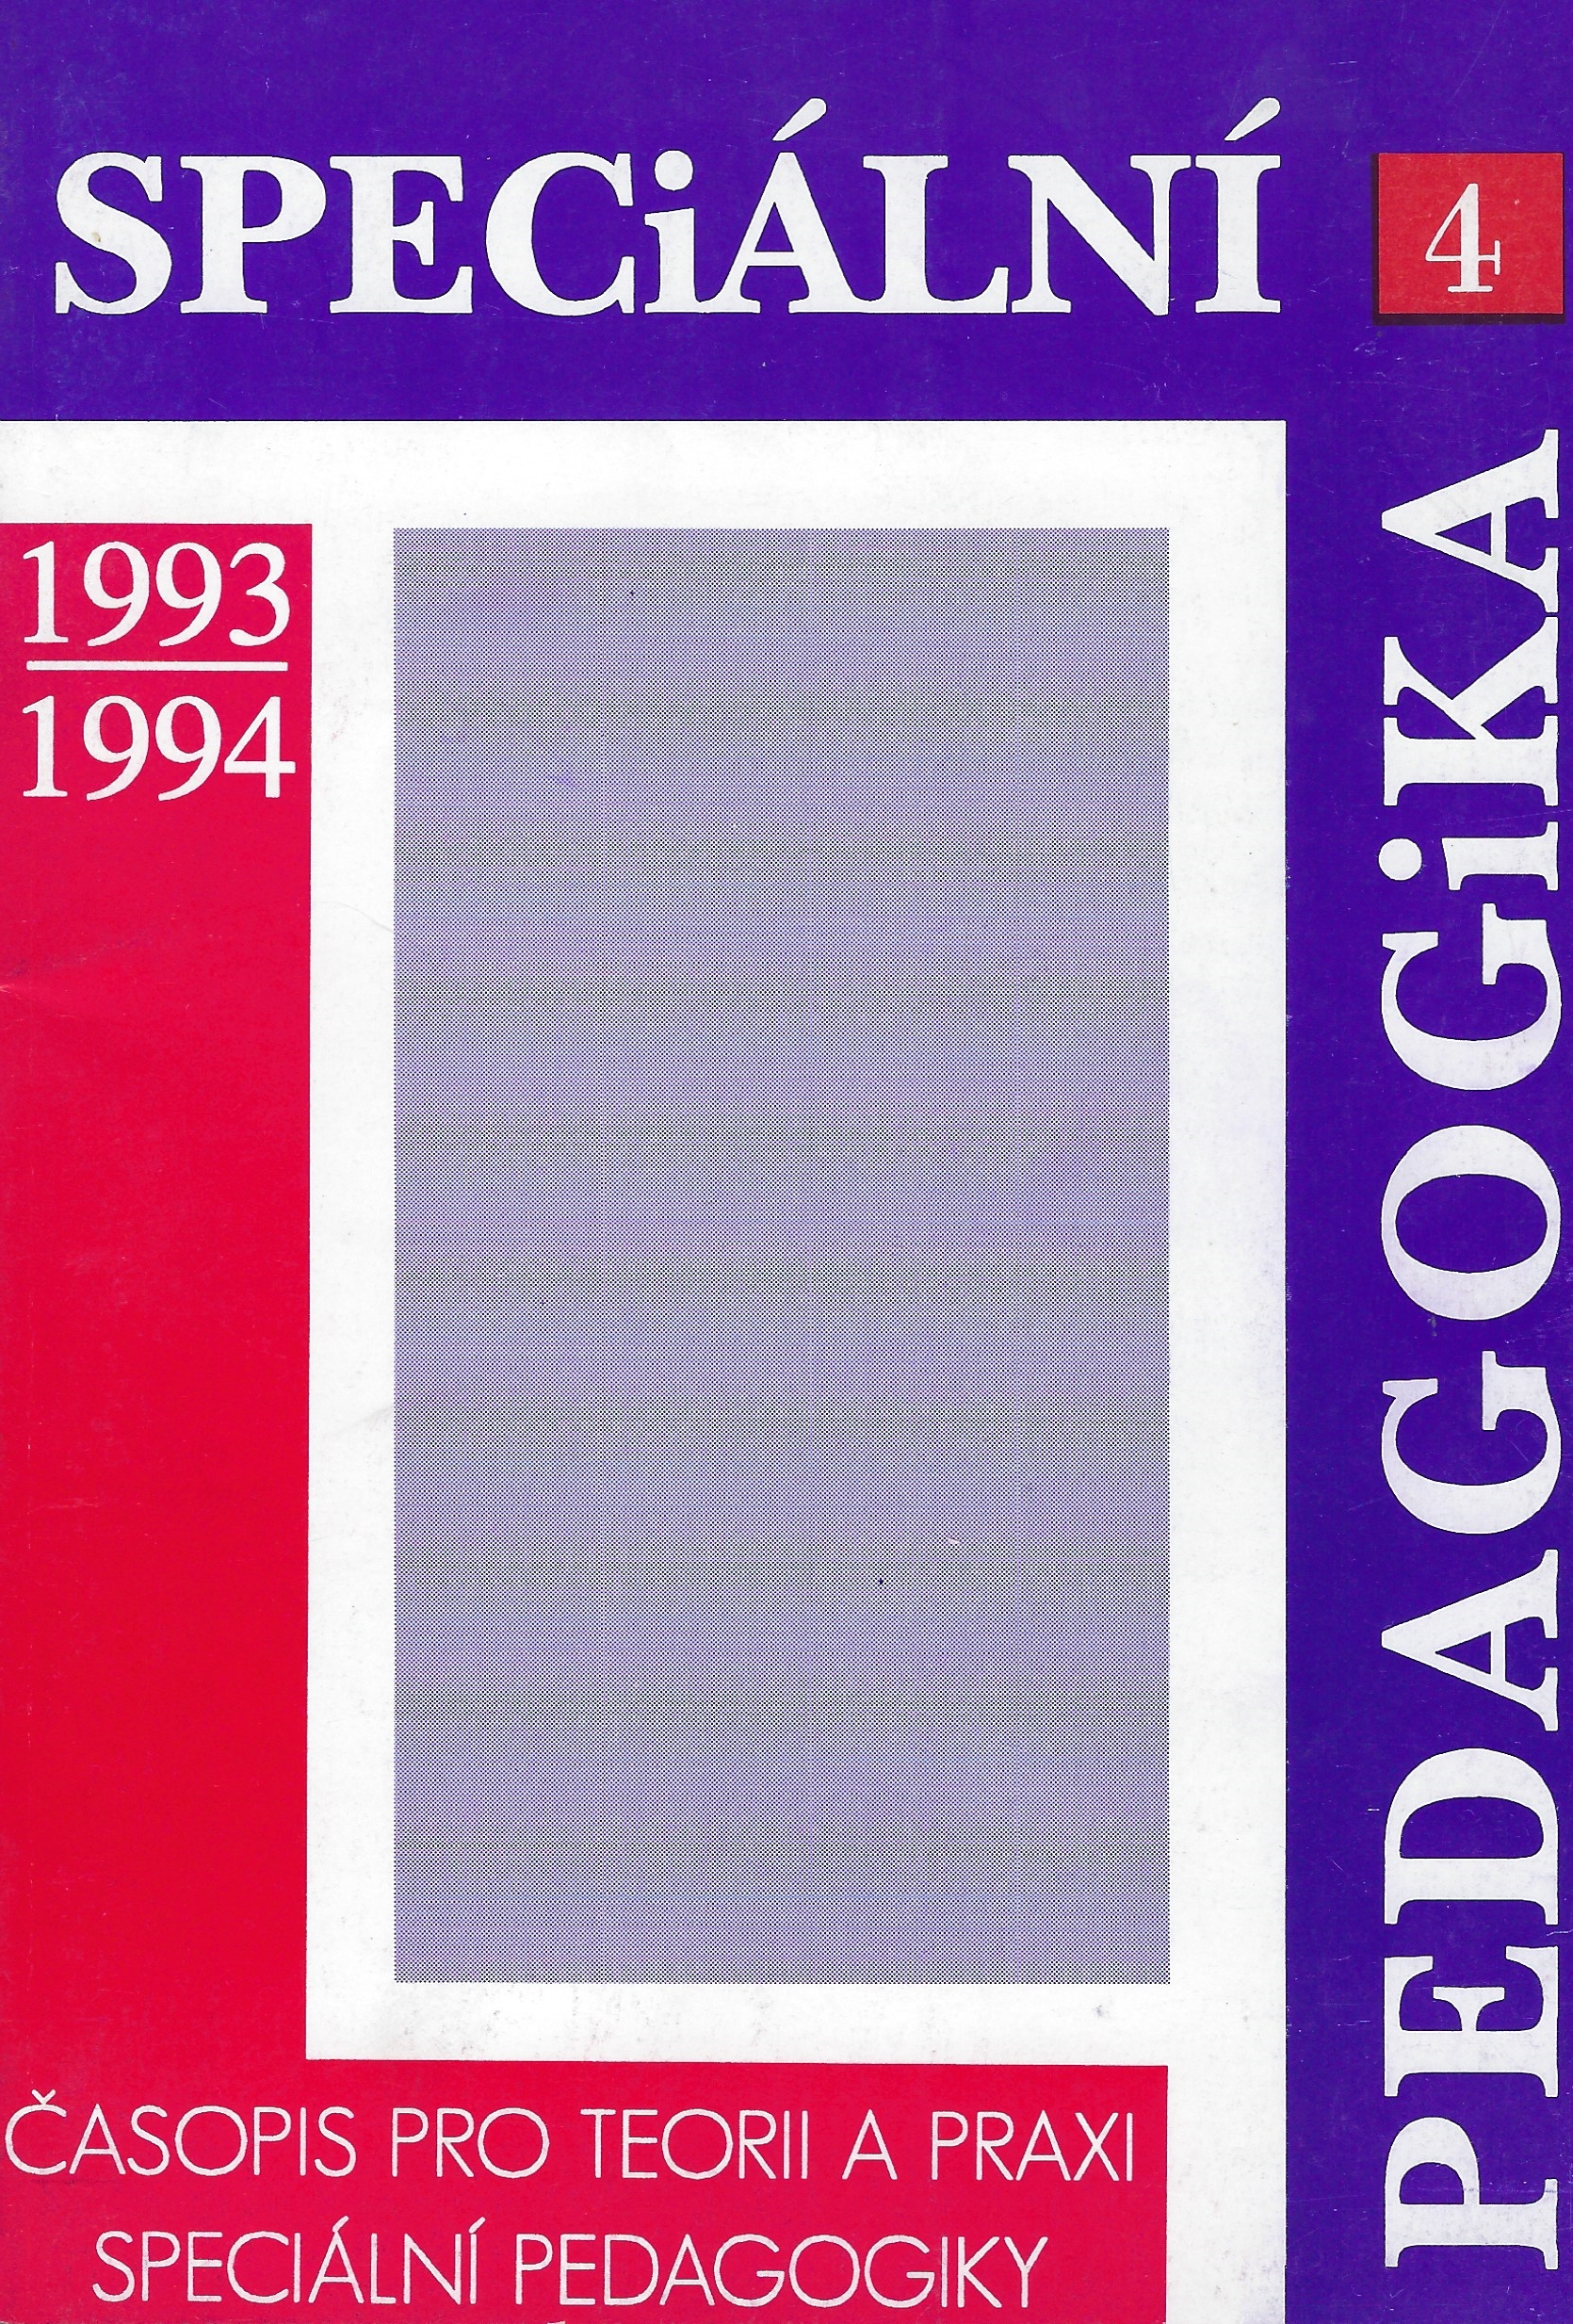 Speciální pedagogika 4-1993/1994